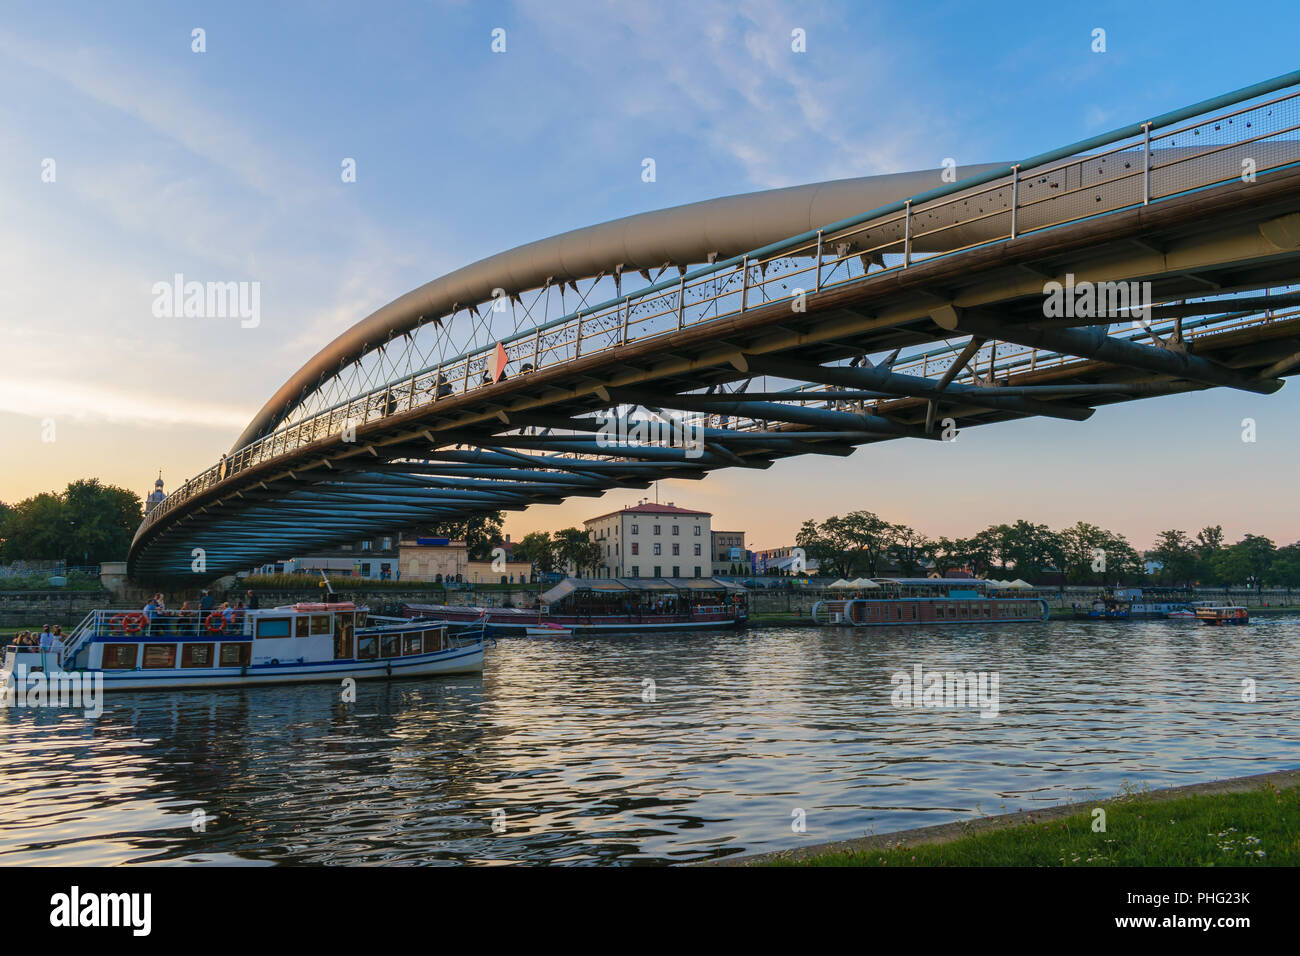 Vater Bernatek Fußgängerbrücke durch die Weichsel (Wisla) River, Krakau, Polen Stockfoto